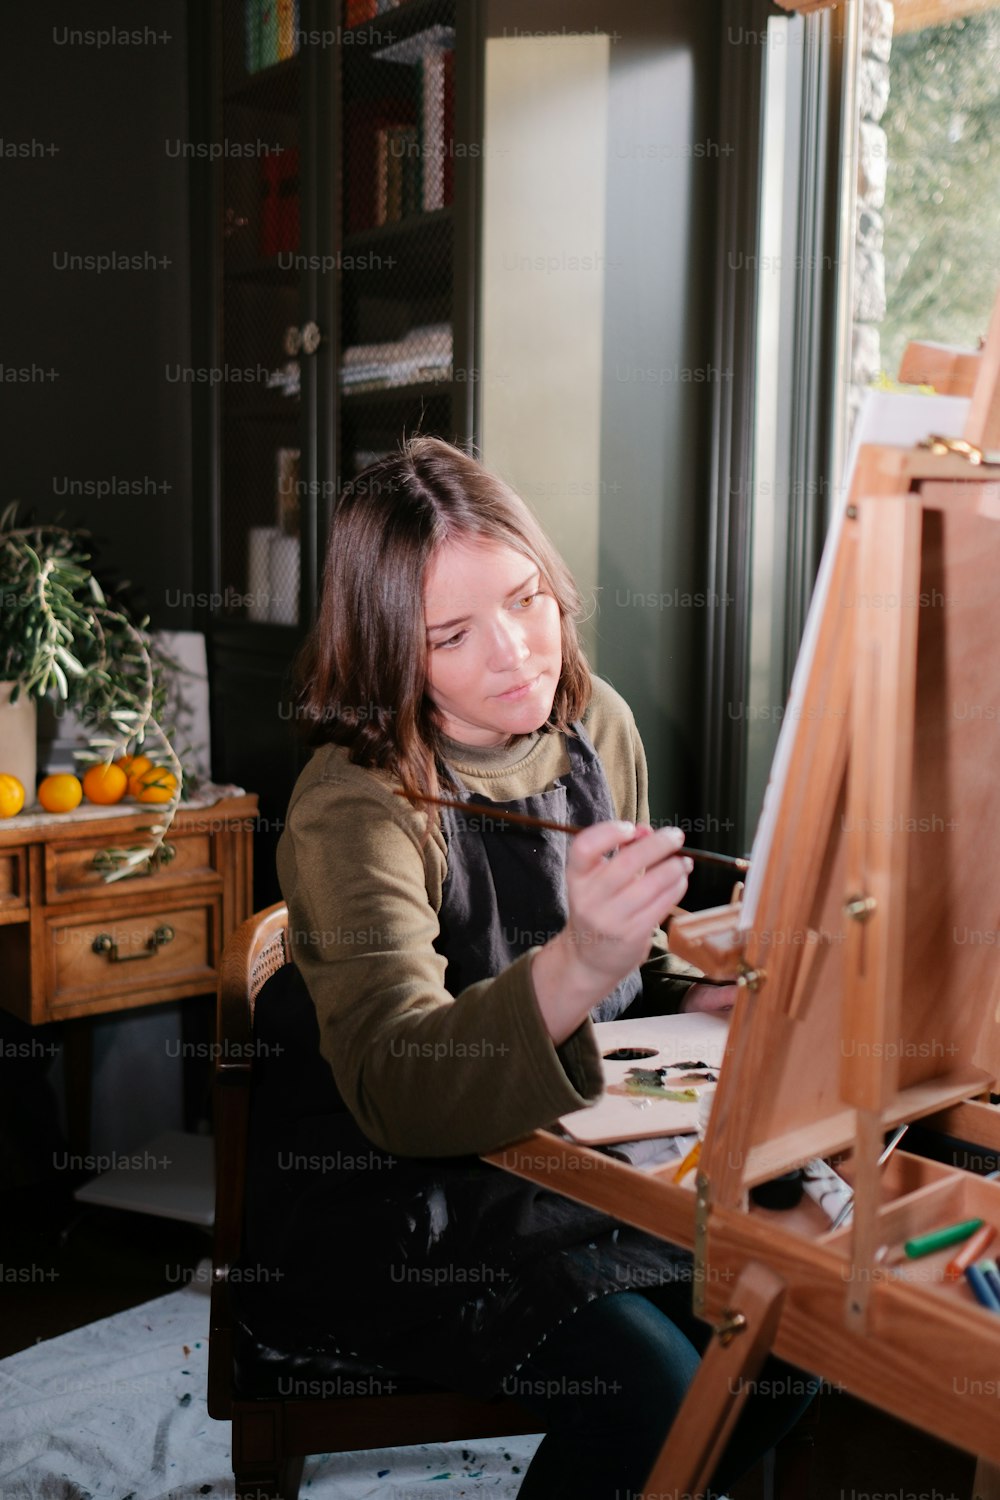 Una mujer sentada frente a una pintura de caballete